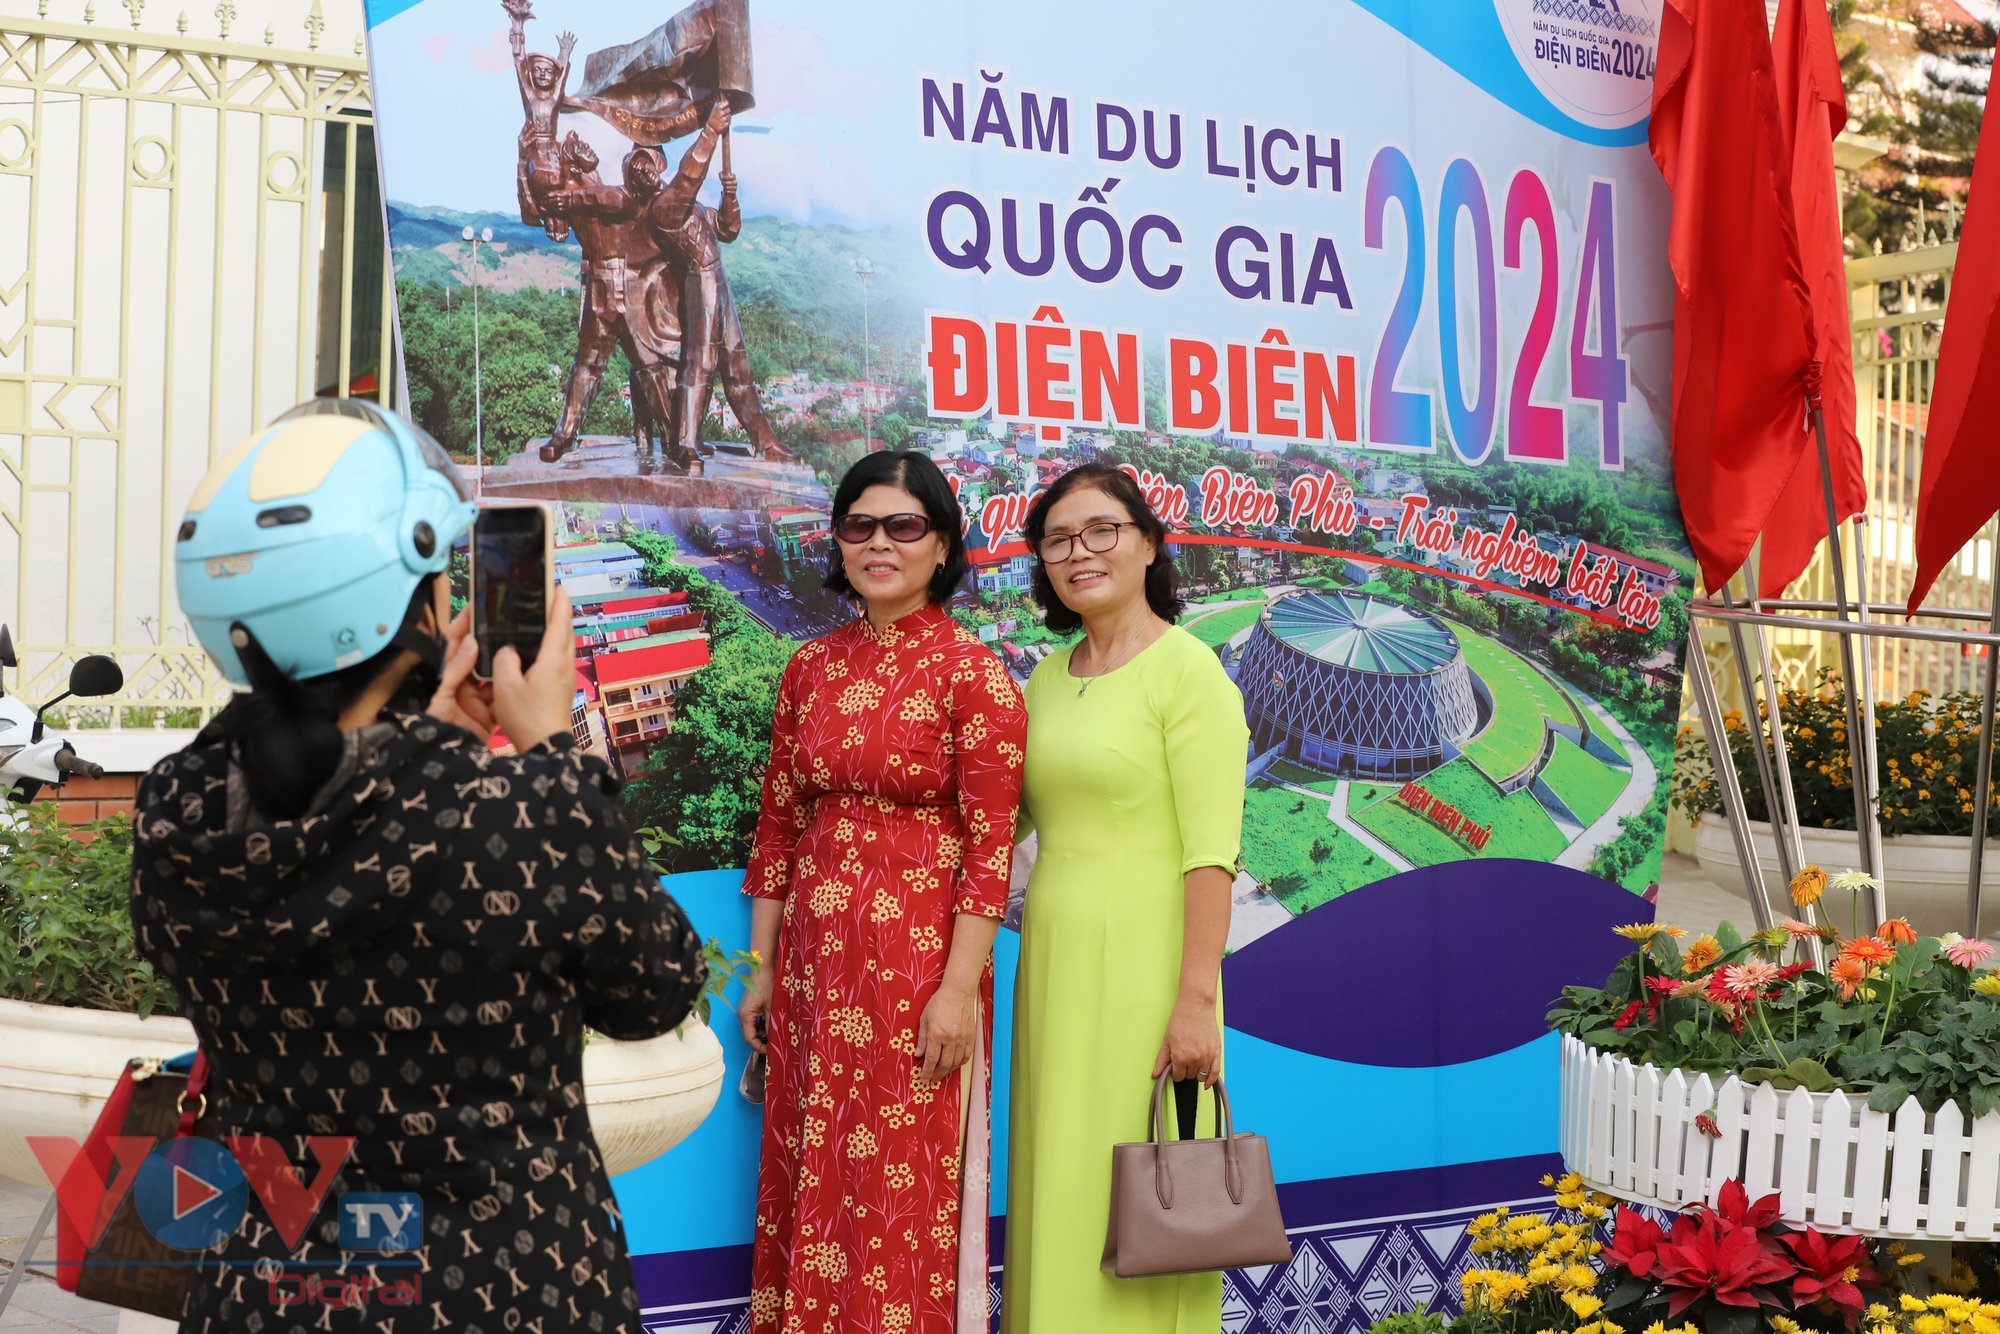 Điện Biên rực rỡ cờ hoa, khách du lịch hào hứng chào đón khai mạc năm Du lịch Quốc gia 2024- Ảnh 6.